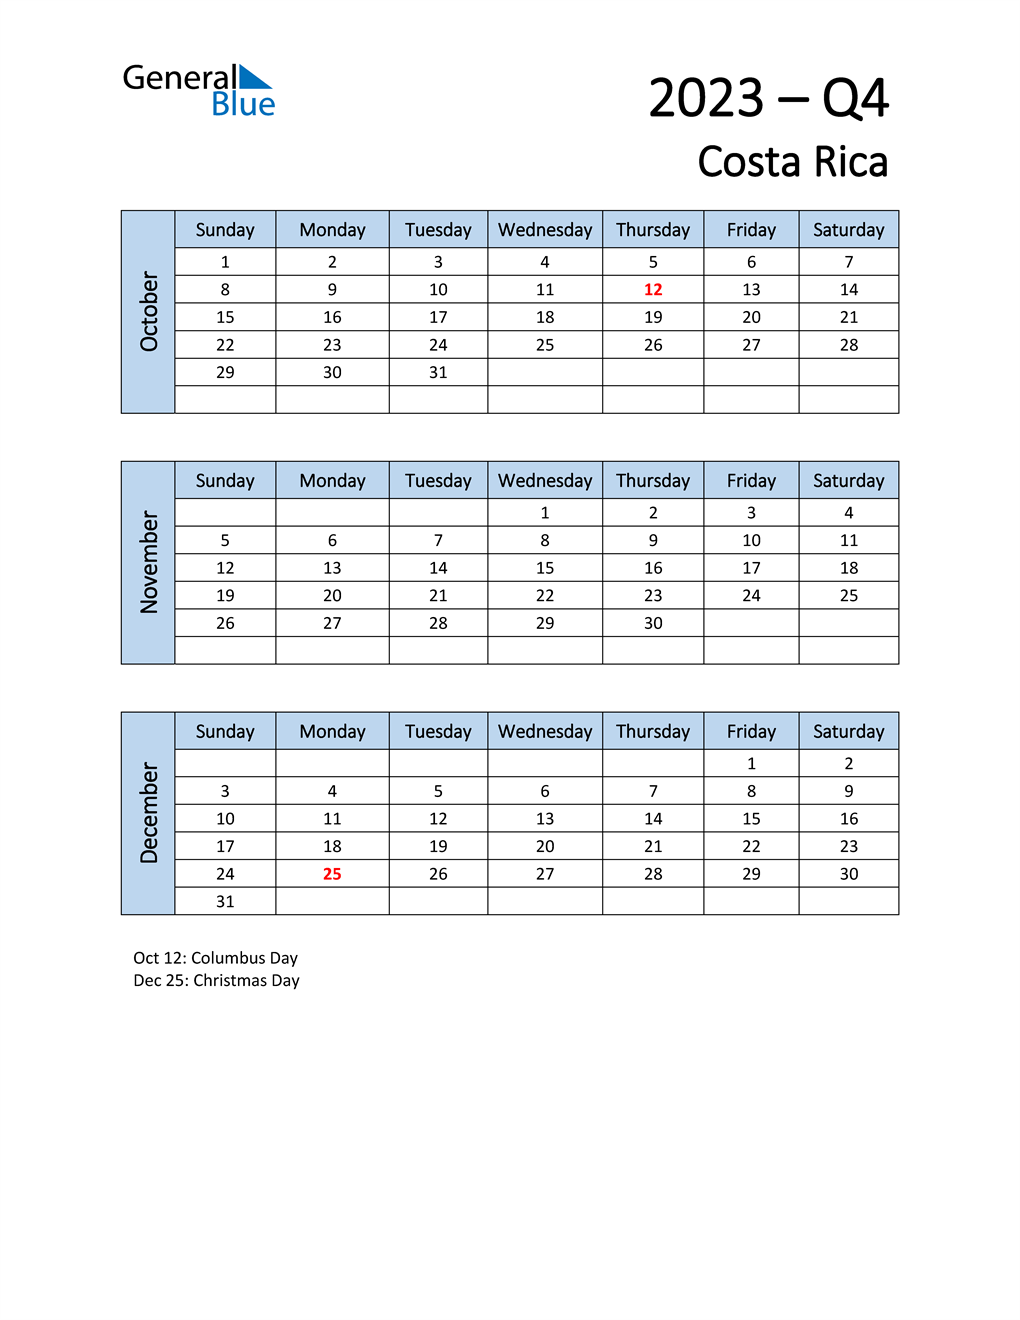  Free Q4 2023 Calendar for Costa Rica